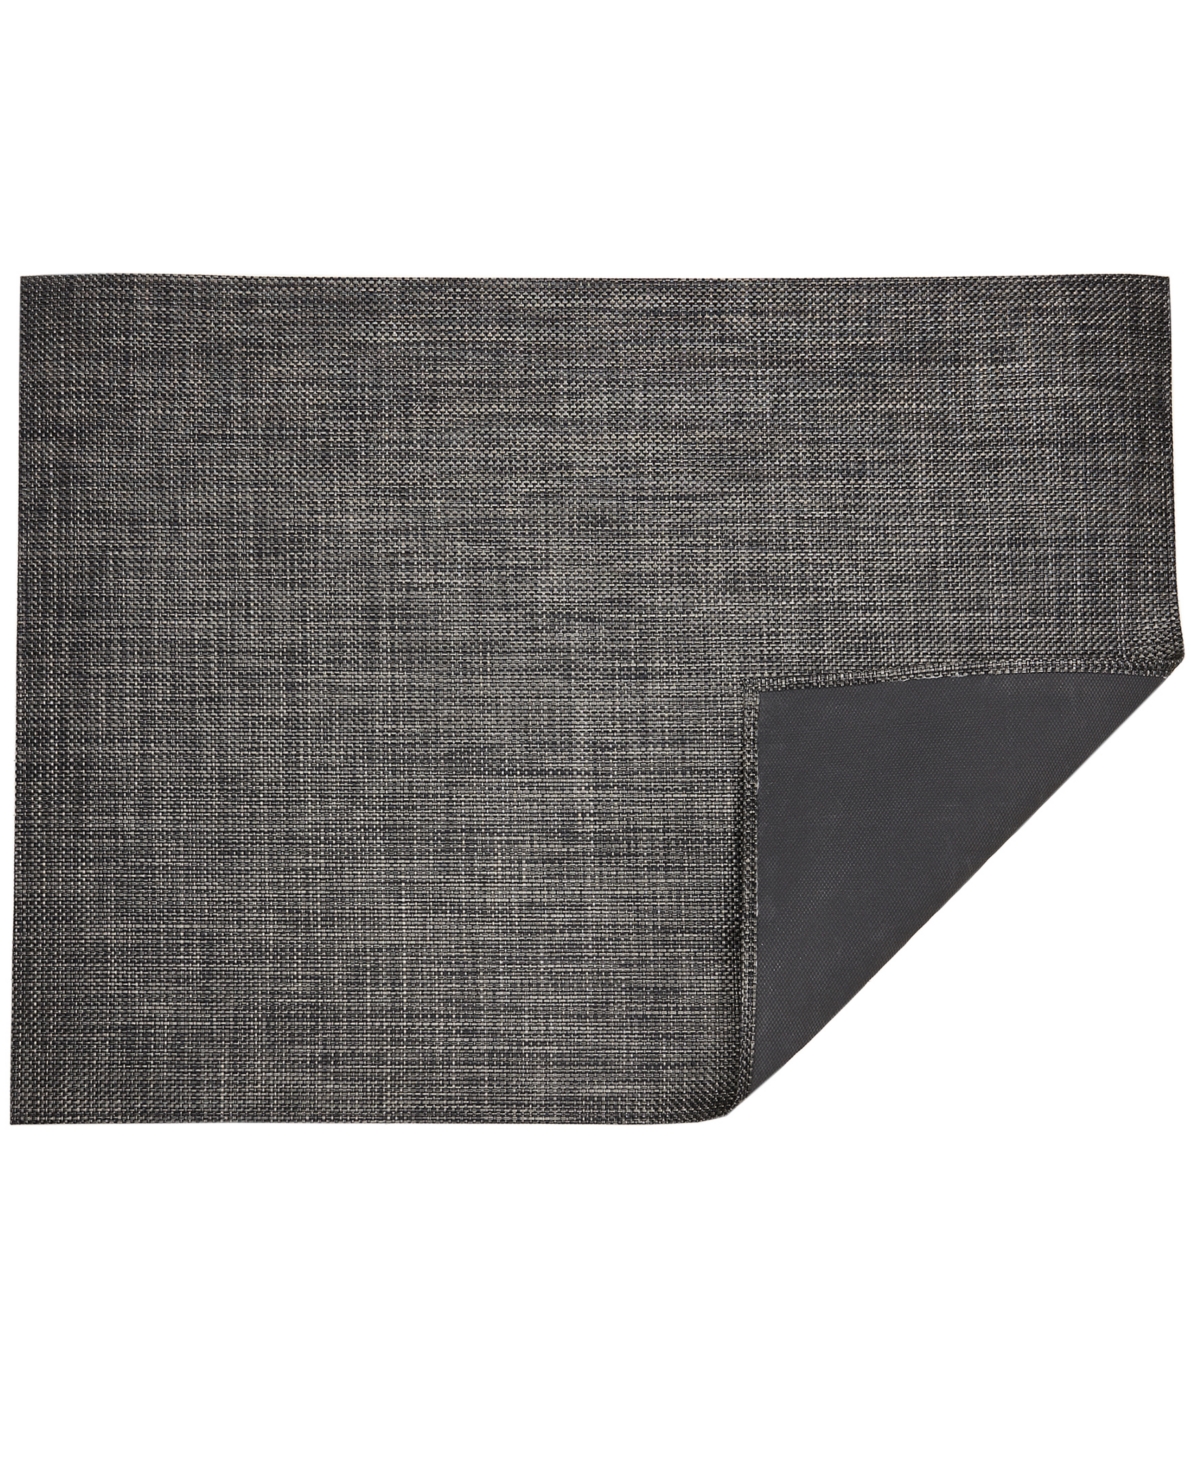 Basketweave Floormat, 26" x 72" - Carbon